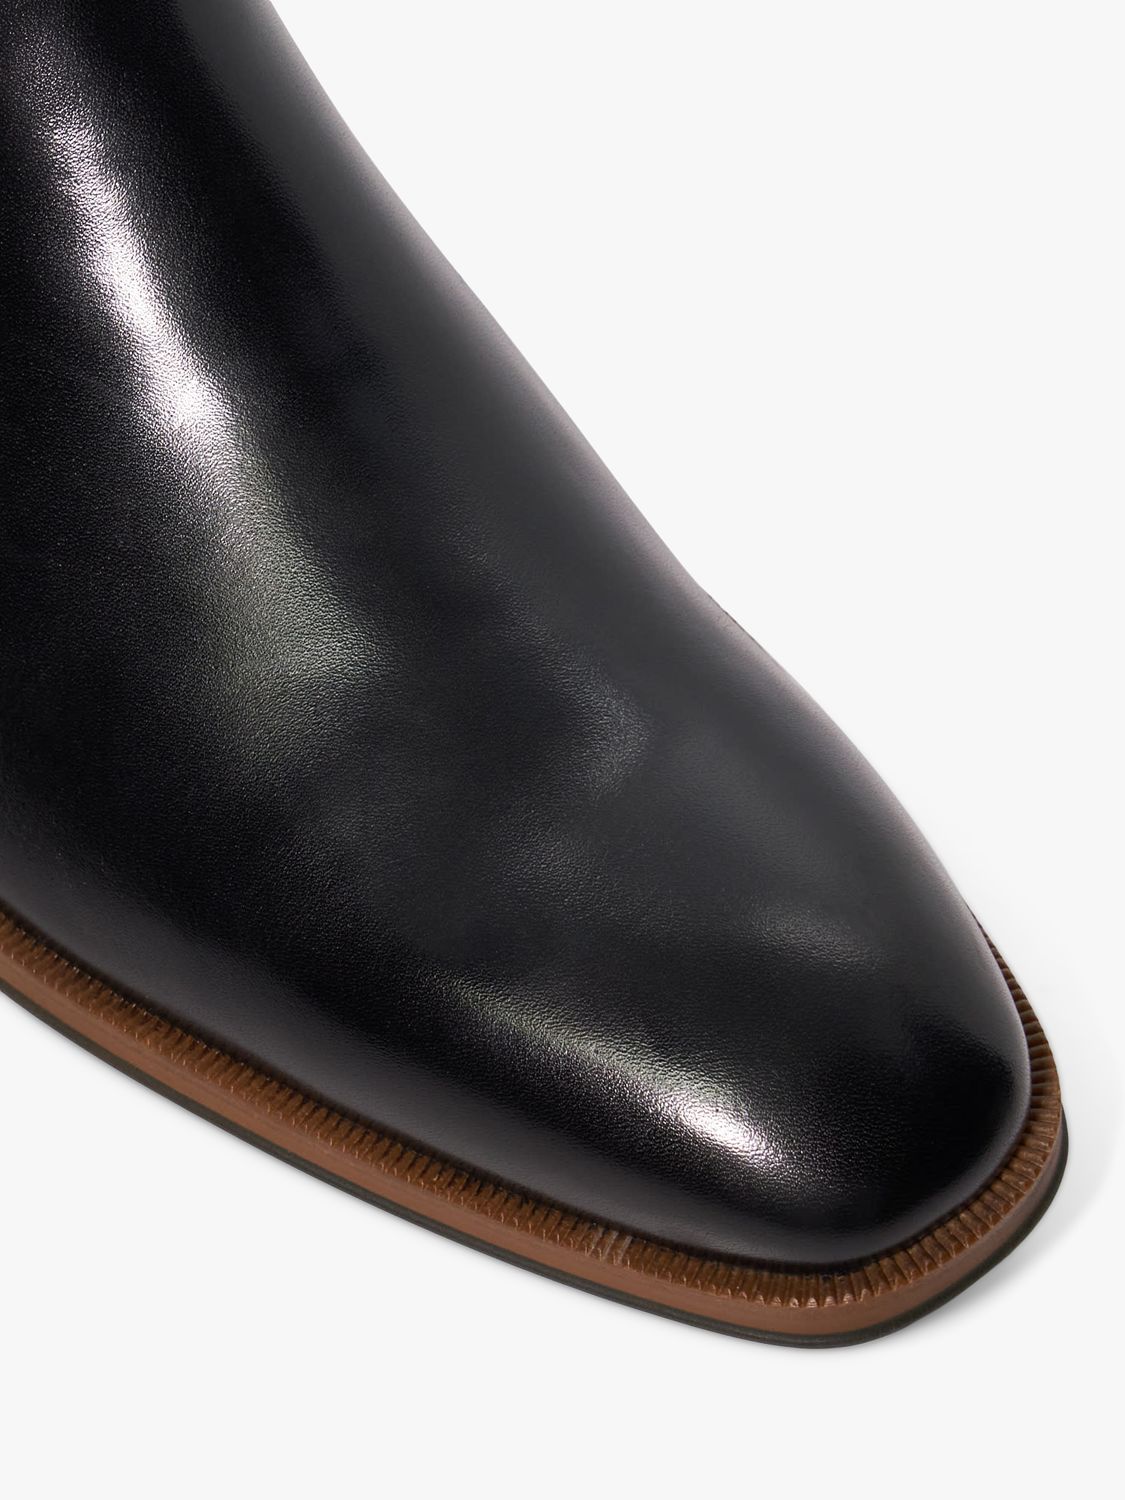 Dune Melvinn Leather Chelsea Boots, Black, 6